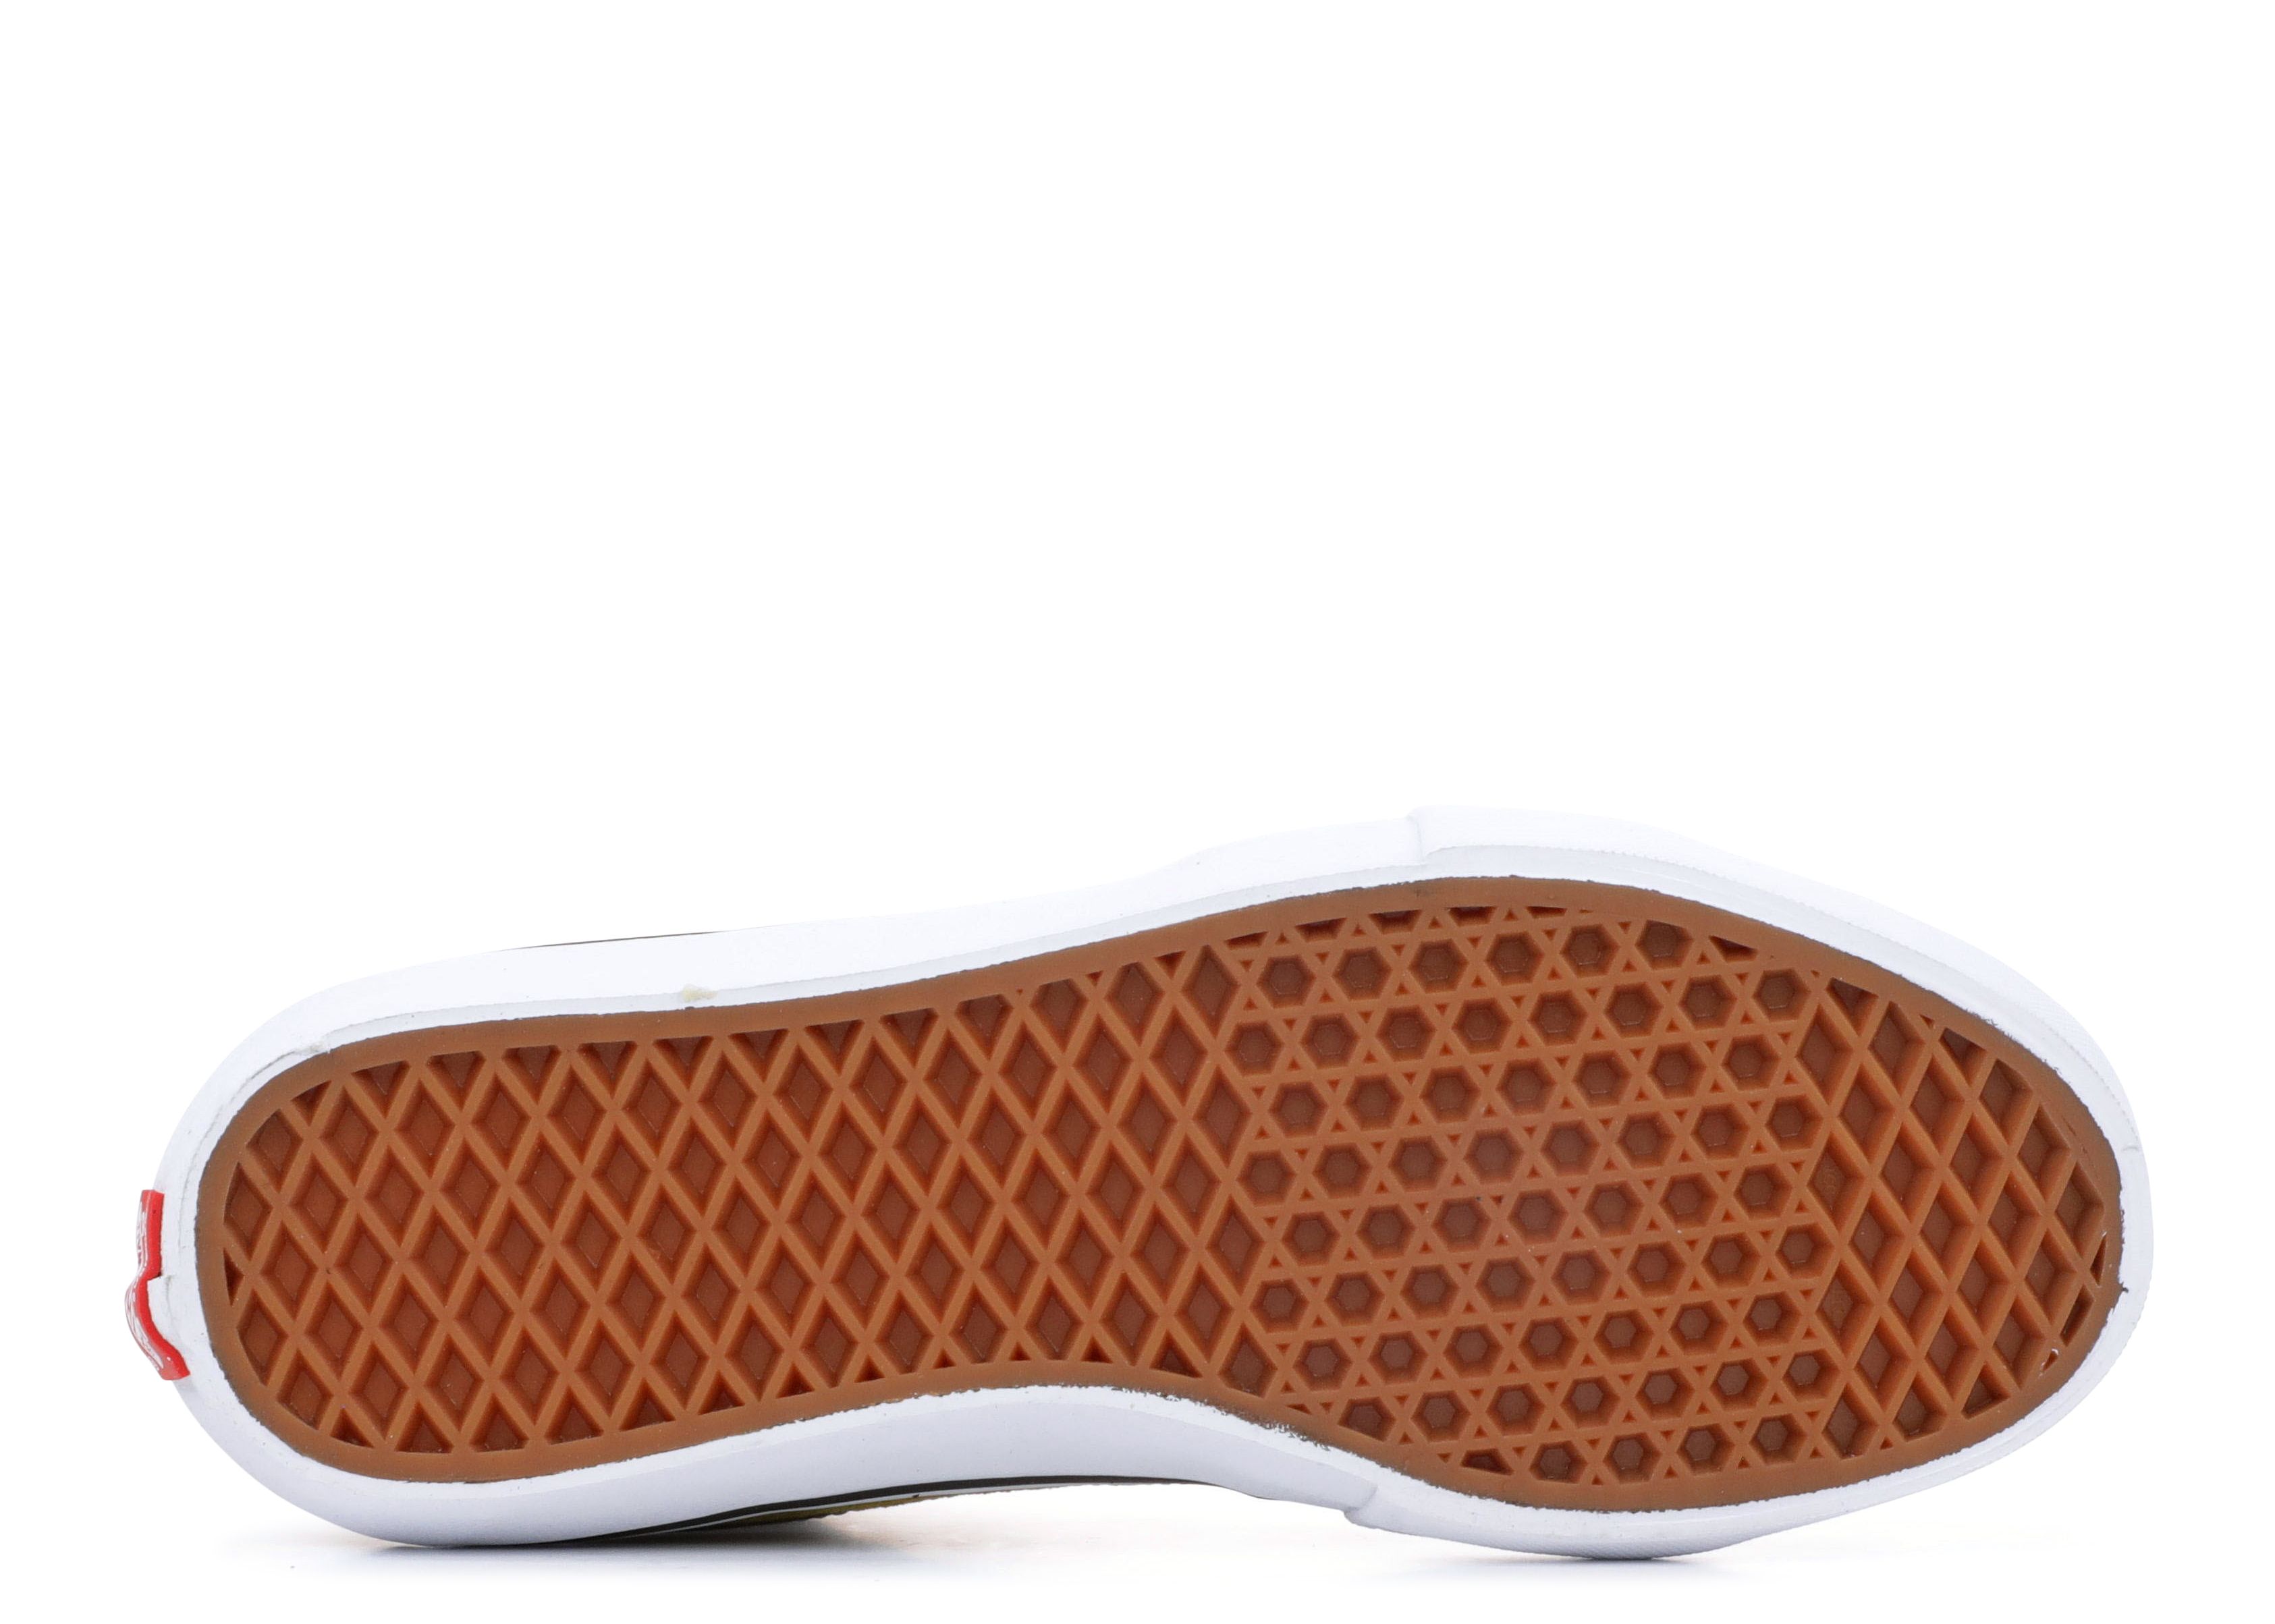 Supreme & Vans Meld Corduroy & Crocodile in Latest Footwear